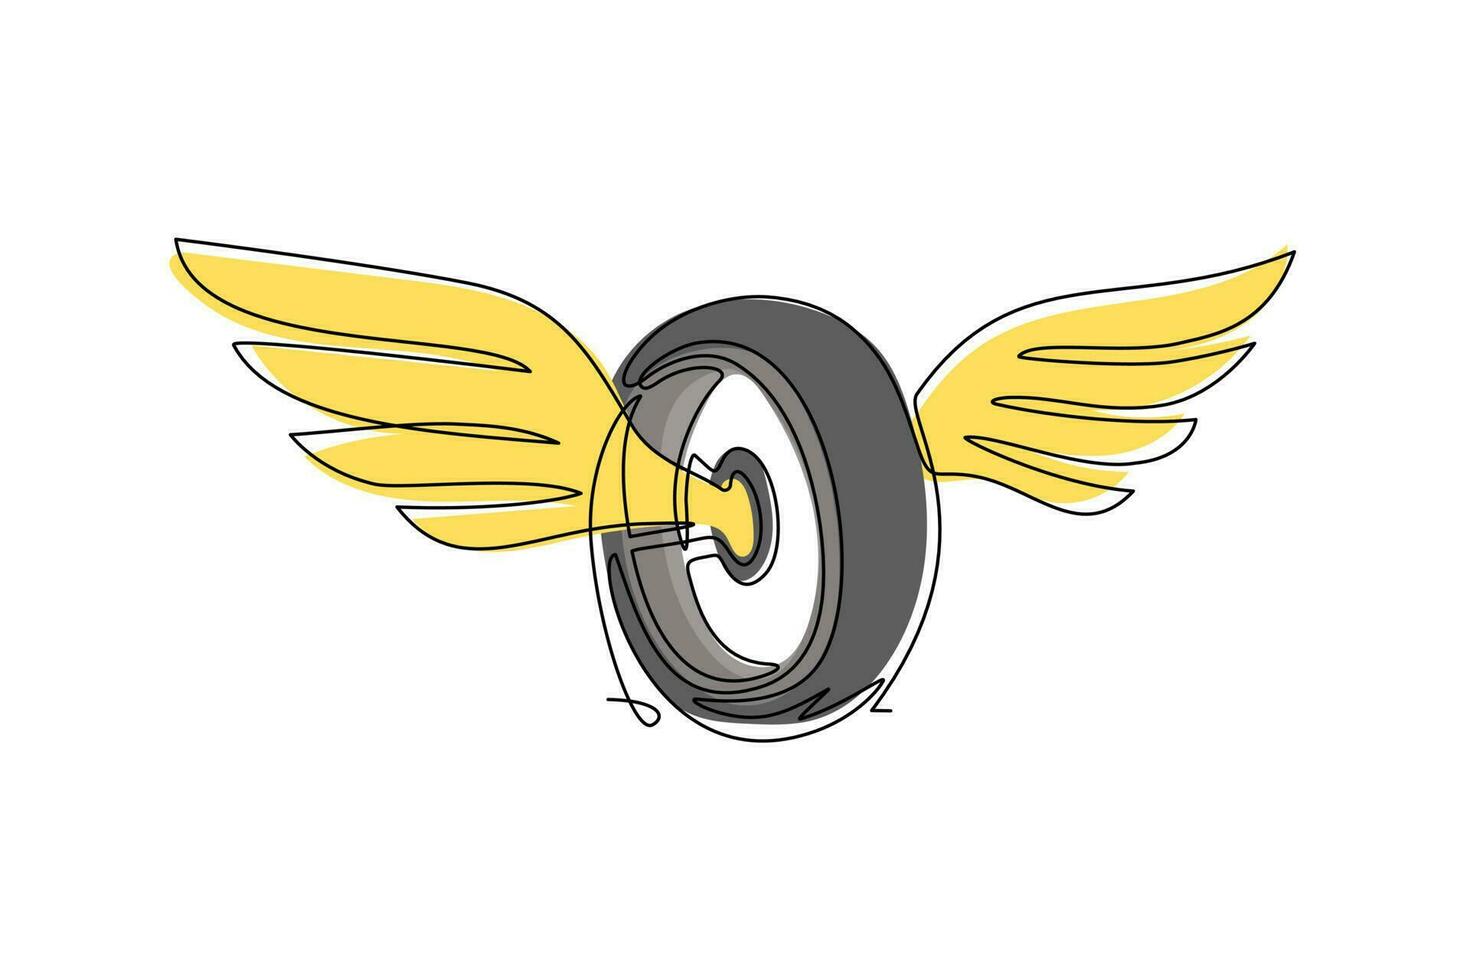 roue de dessin à une seule ligne avec des ailes. pneus de voiture ailés isolés. concevoir un élément plat pour le logo, l'étiquette, l'emblème, le signe, le badge, le t-shirt, l'affiche. ligne continue moderne dessiner illustration vectorielle graphique vecteur